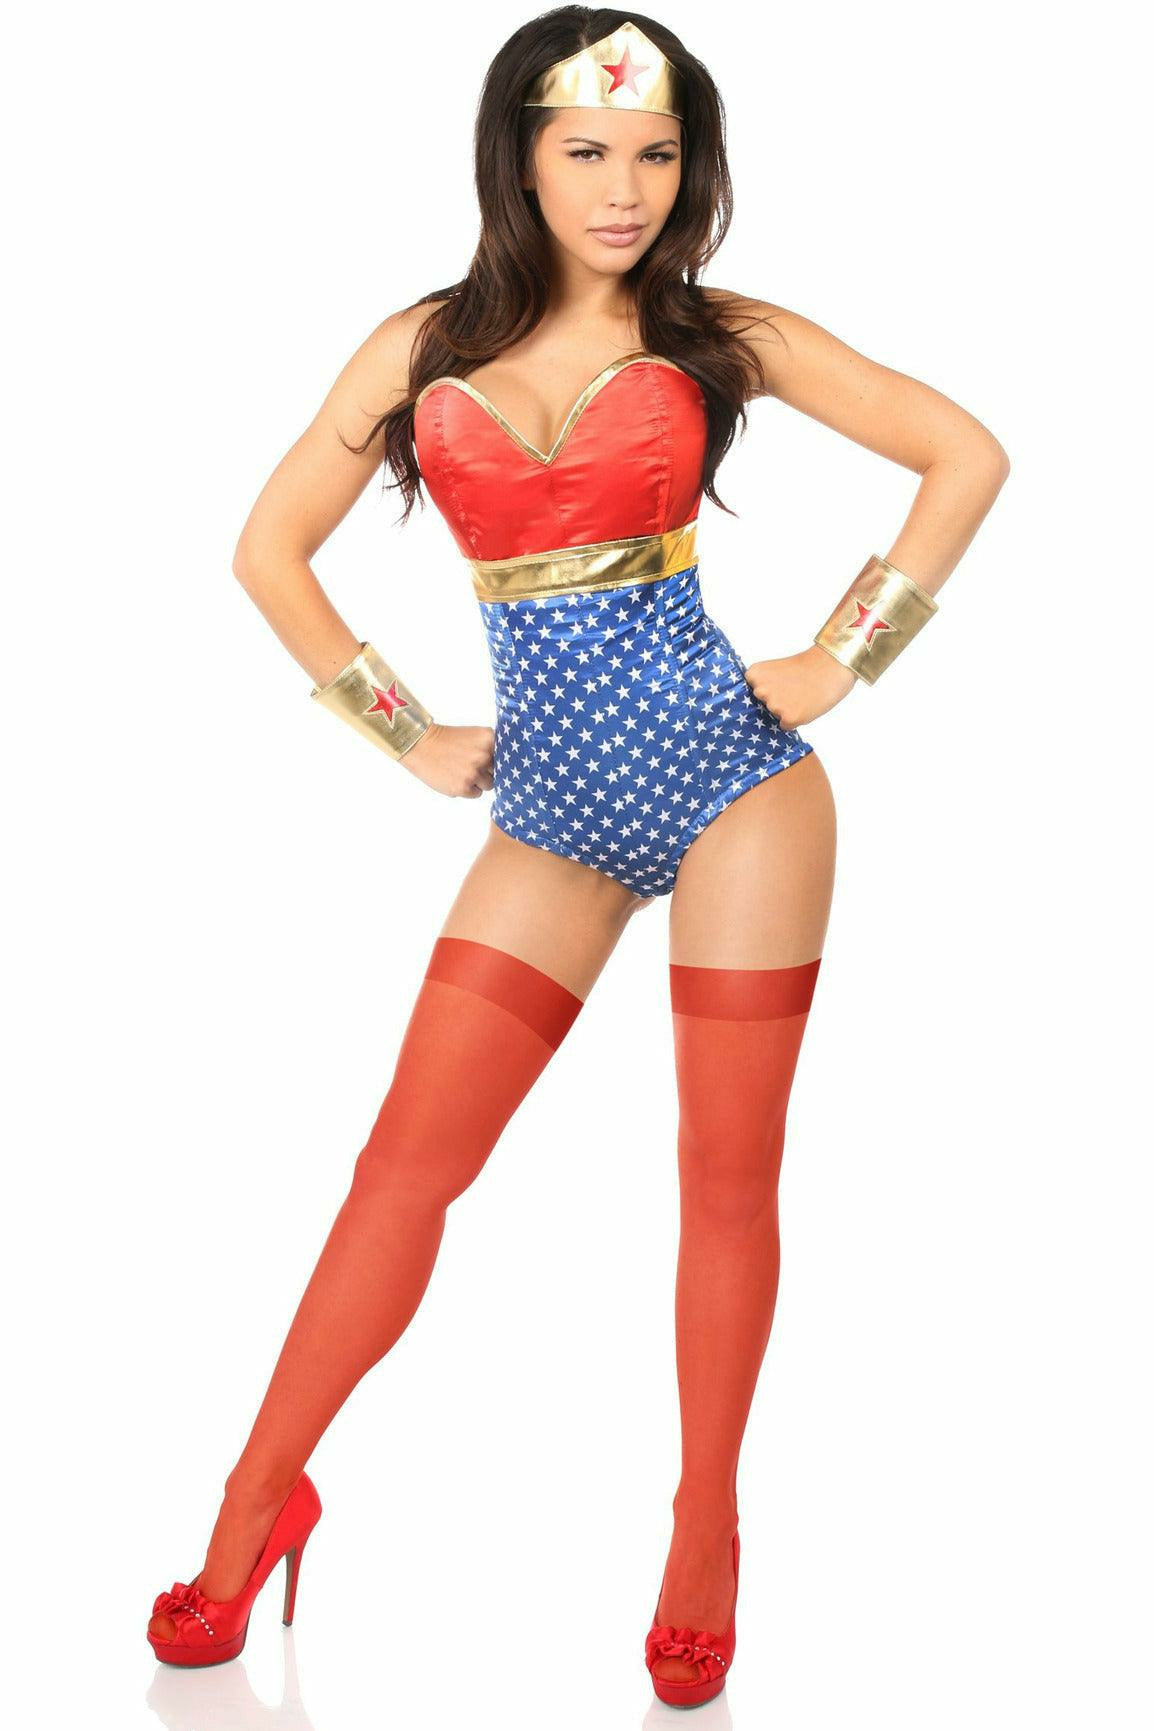 Lavish 3 PC Sexy Wonder Woman Costume in Size S, M, L, XL, 2X, 3X, 4X, 5X, or 6X